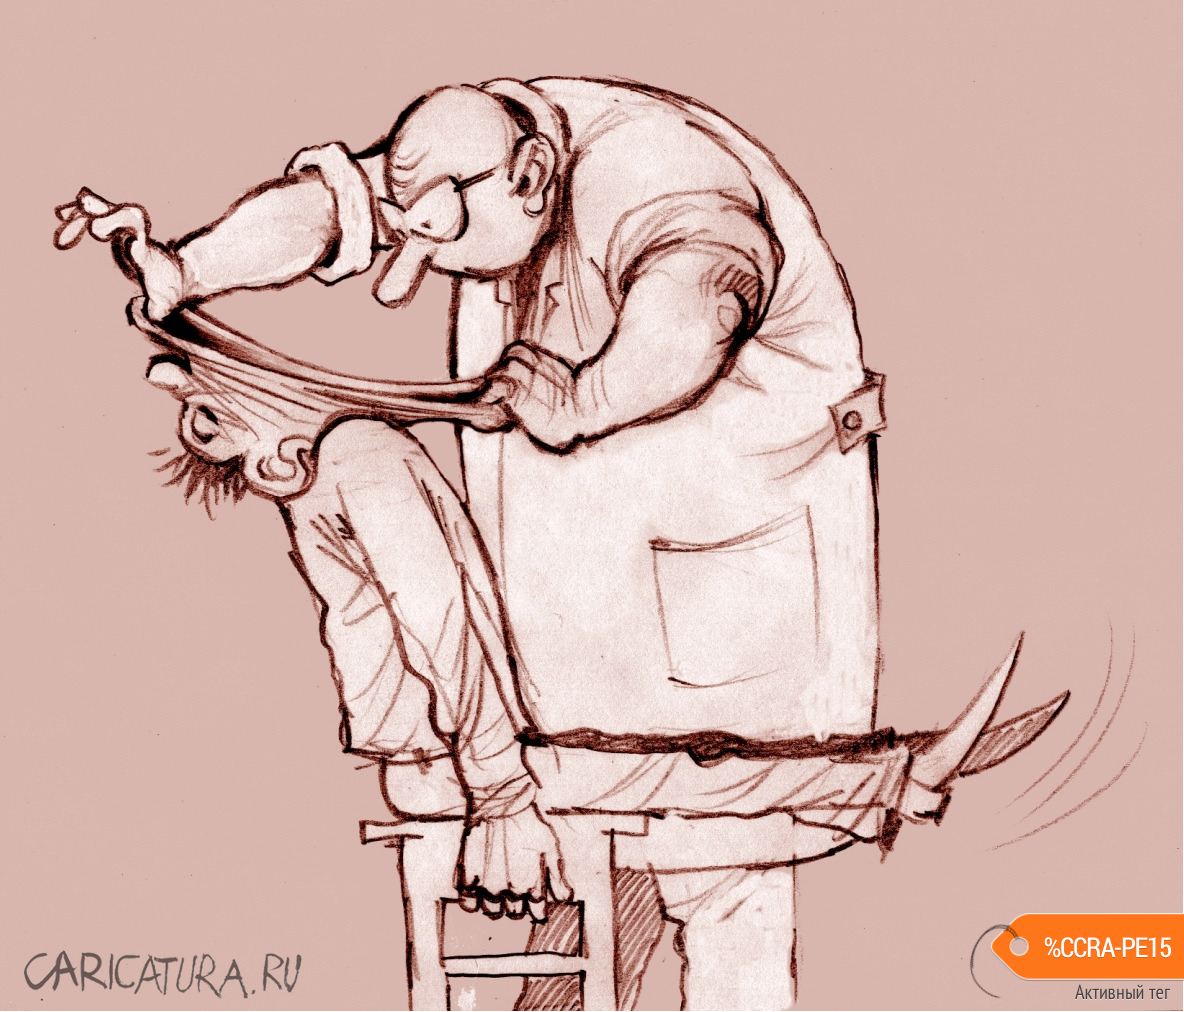 Карикатура "Стоматолог, разрывающий пасть...", Александр Попов